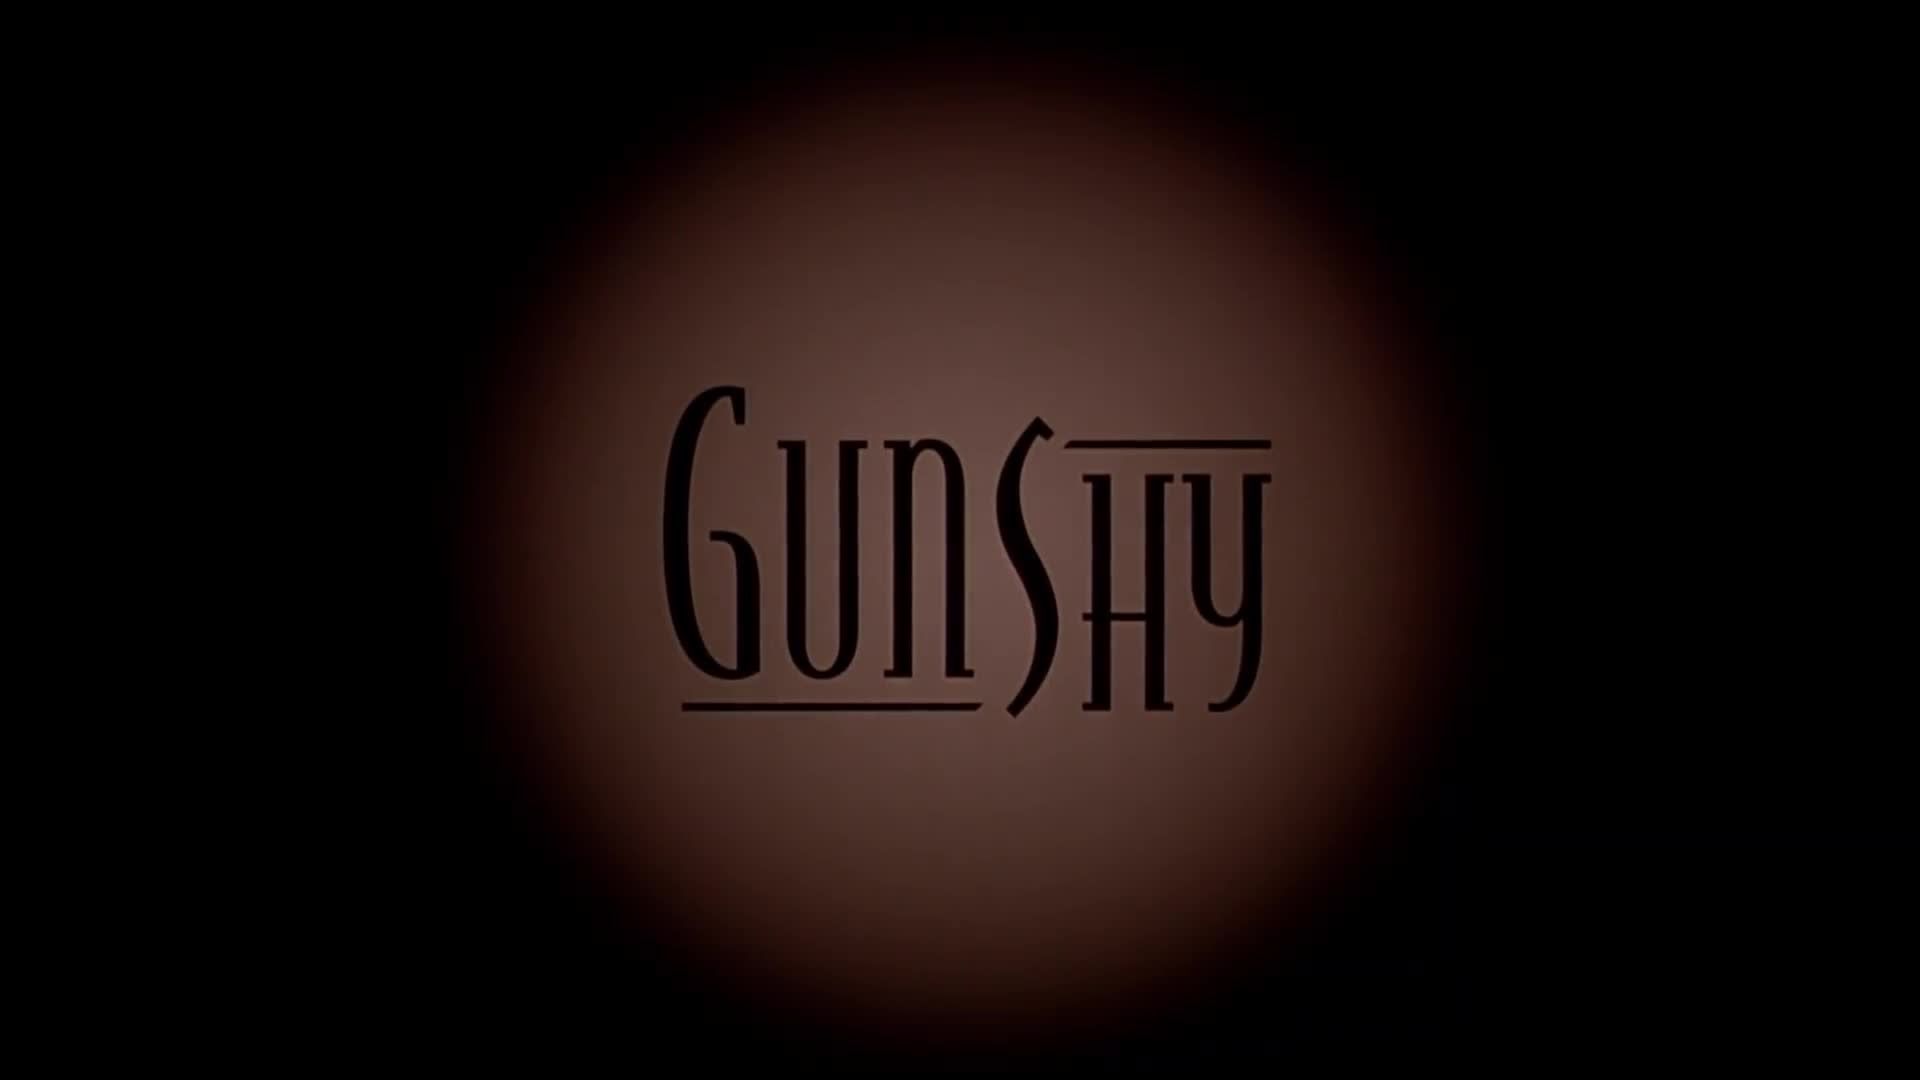 Gunshy 